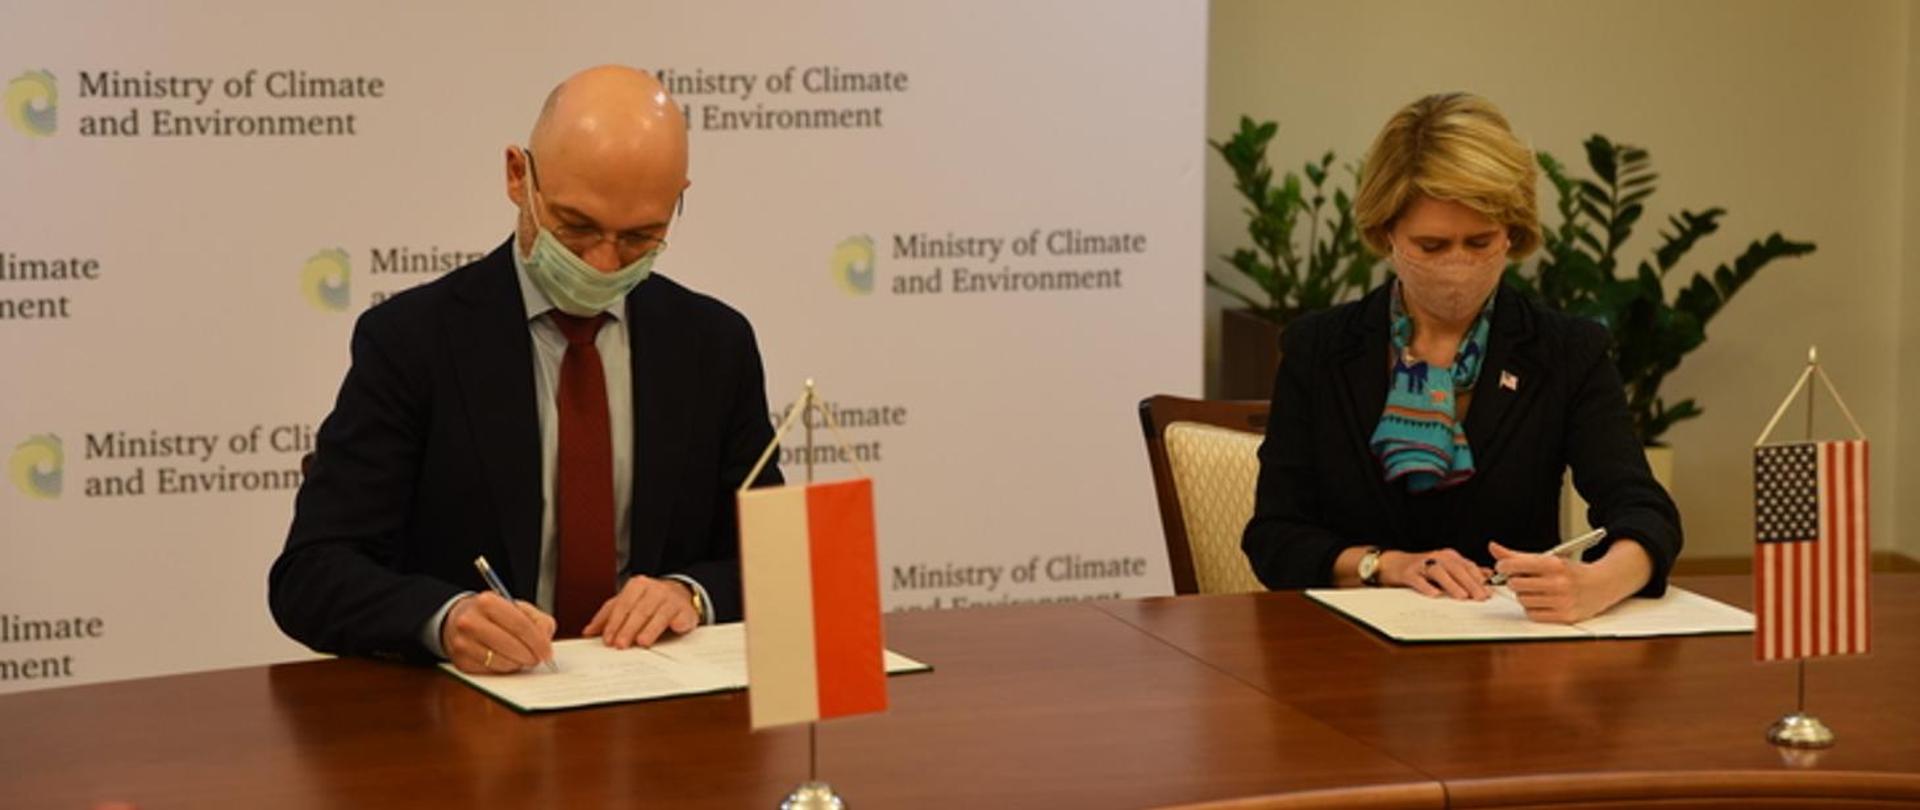 Polsko-amerykańskie porozumienie o współpracy przy finansowaniu projektów wspierających transformację klimatyczną 